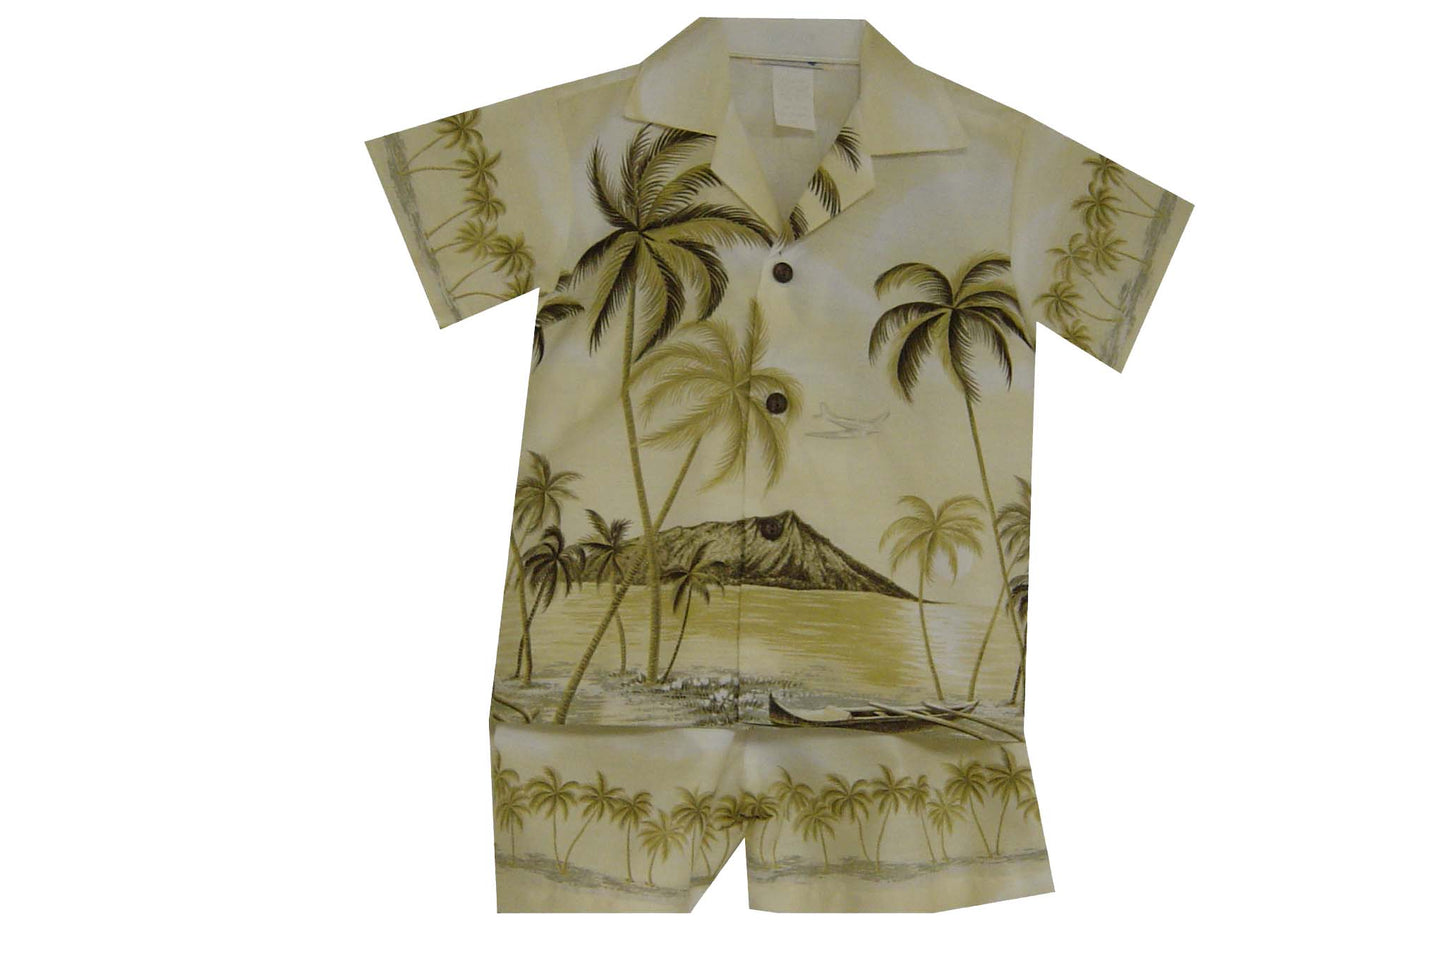 Palms Trees Diamond Head  Hawaiian Boy Shirt -Yellow